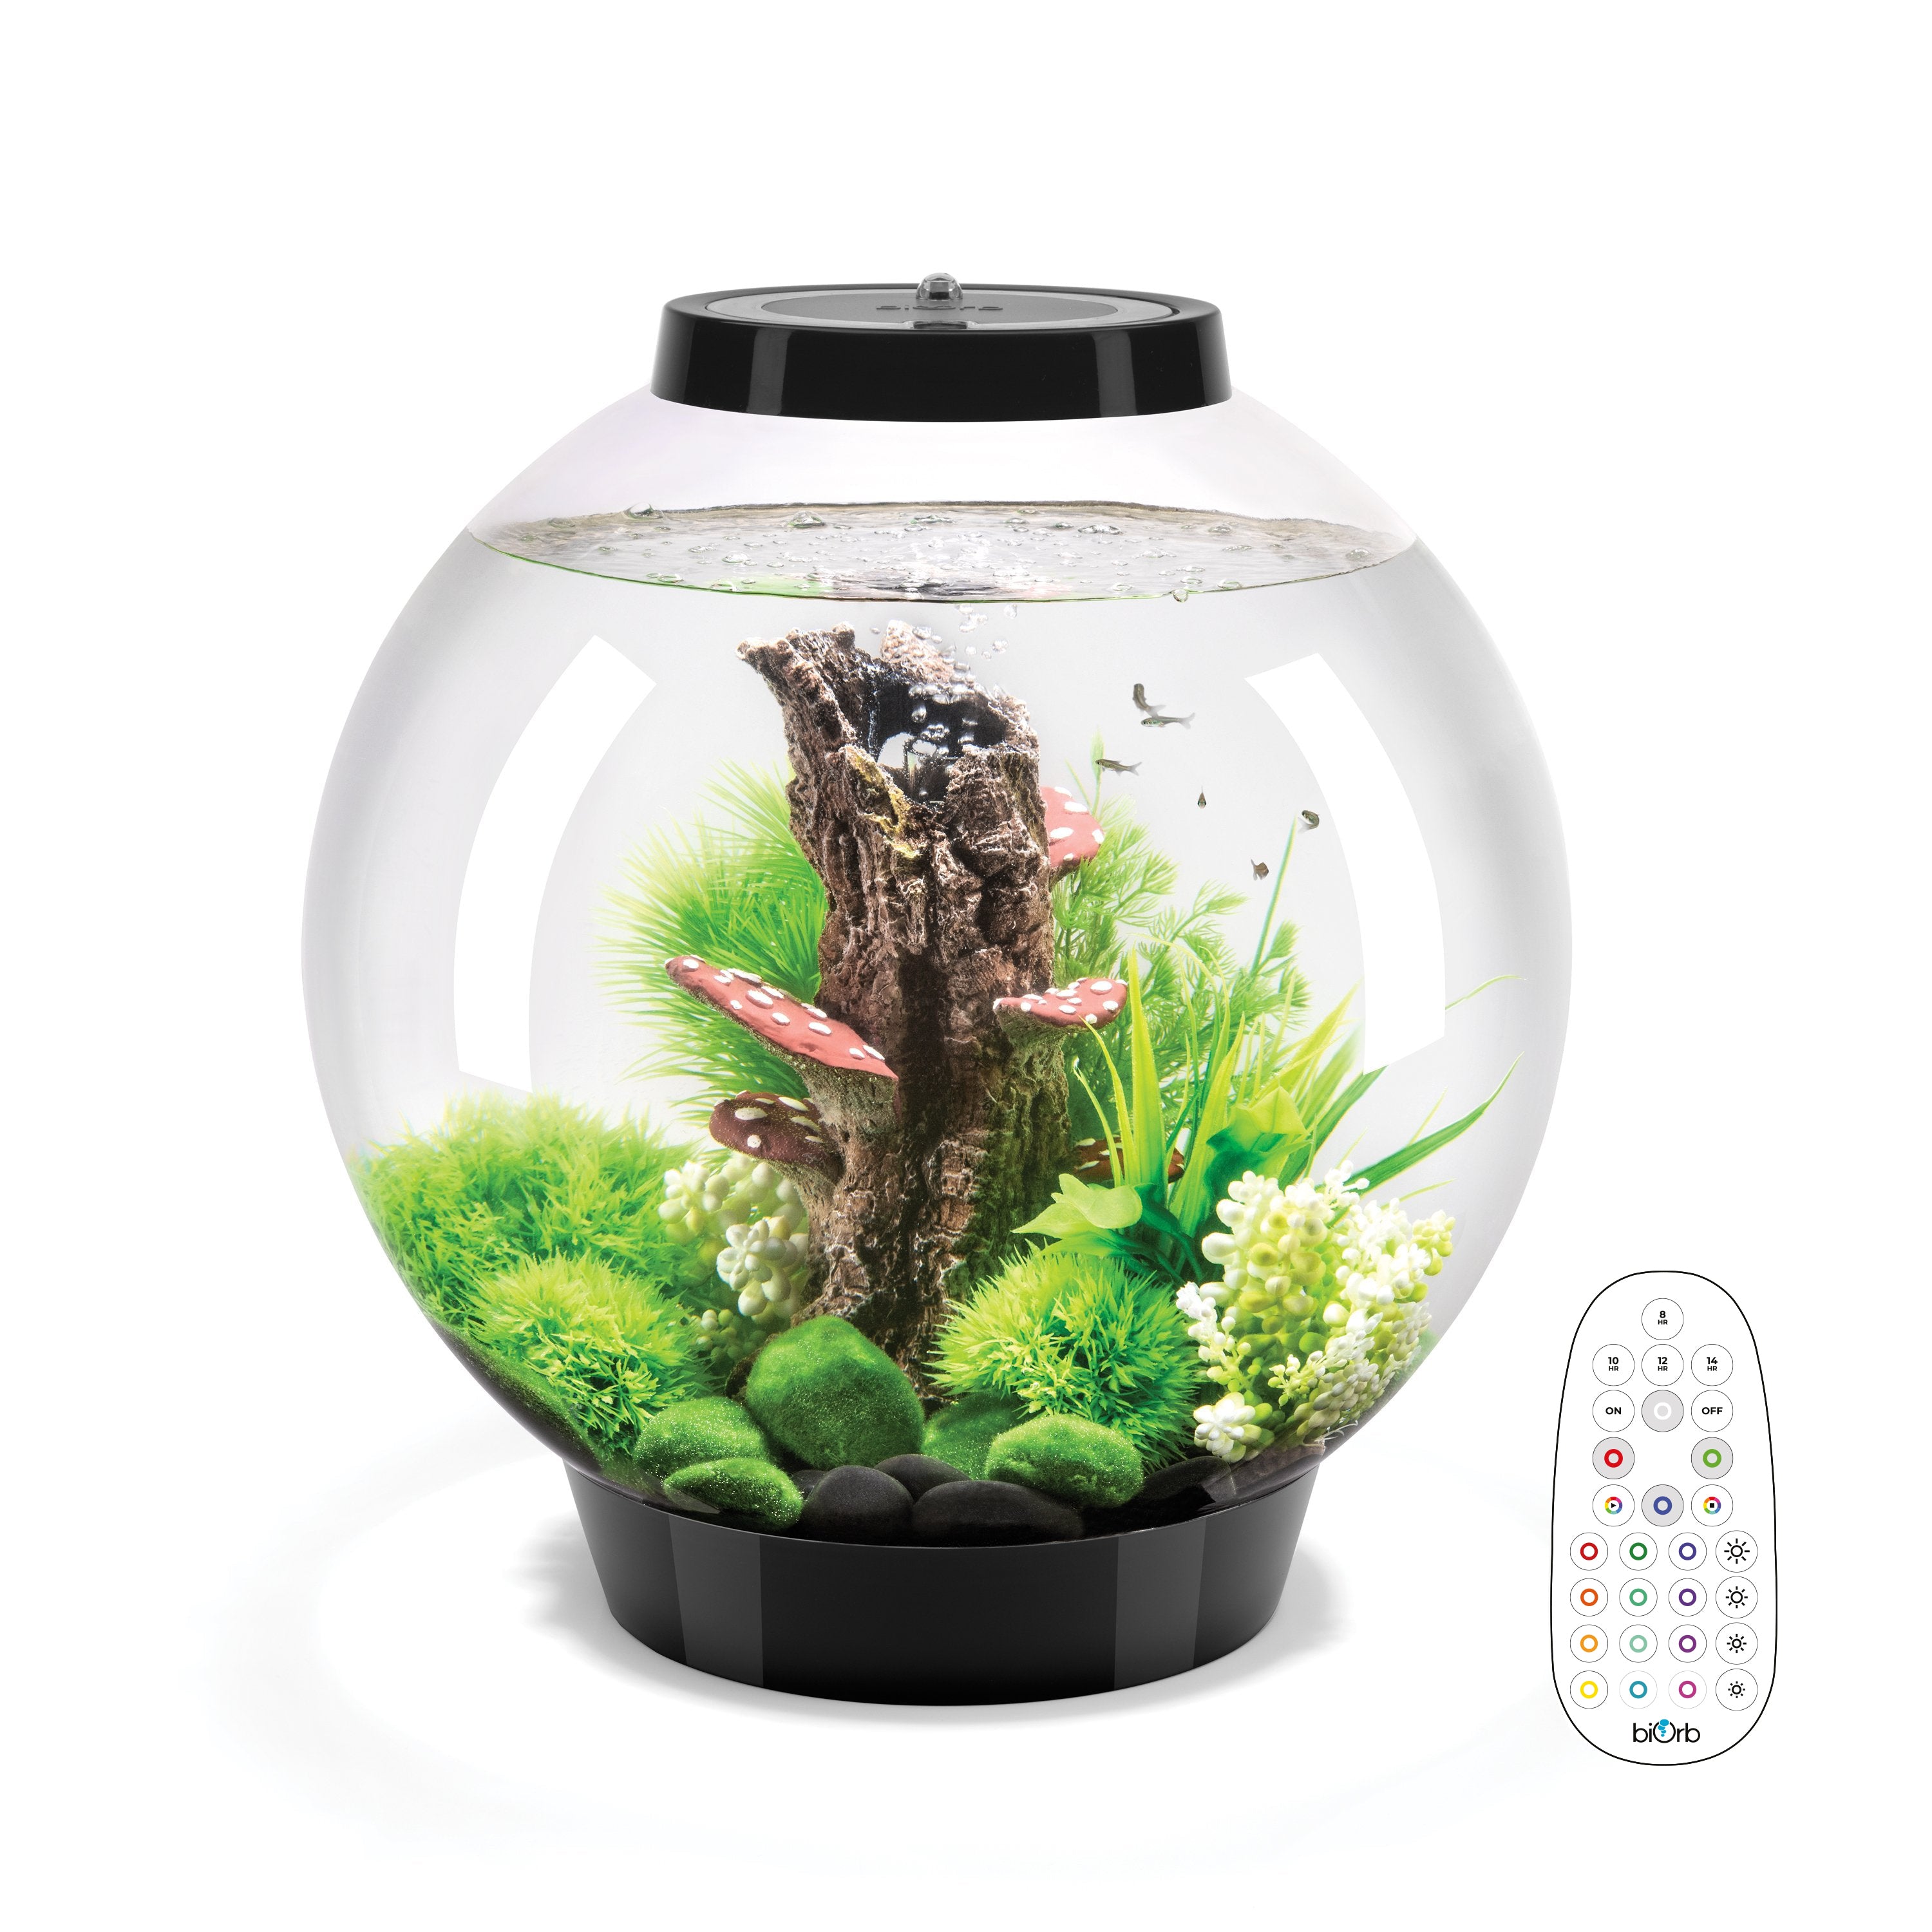 CLASSIC 30 Aquarium with Multi Colour LED light - remote control